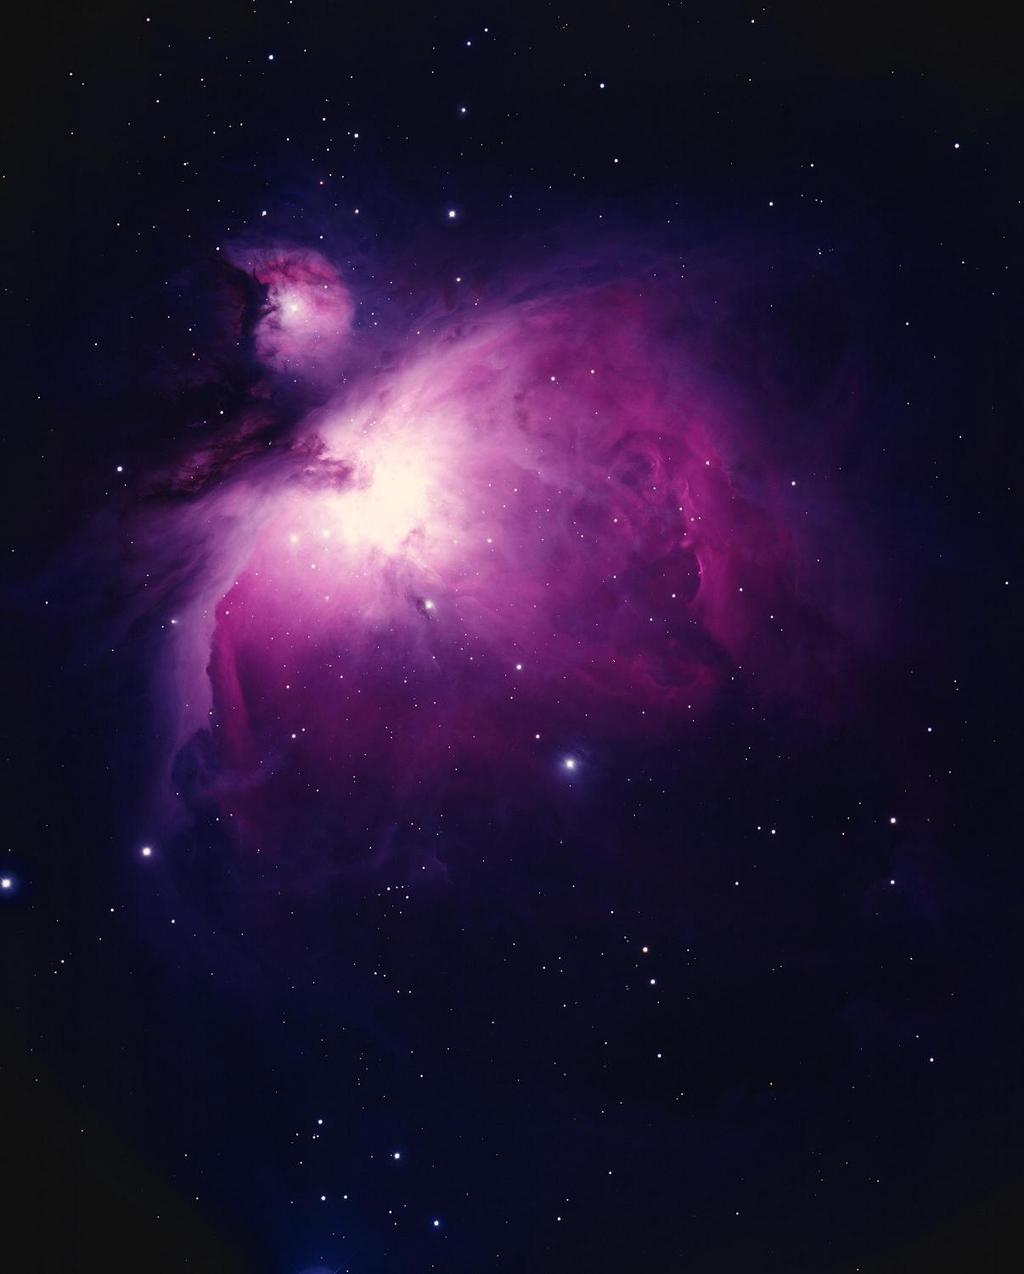 θ Orionis, the bright 'star' within the nebula,